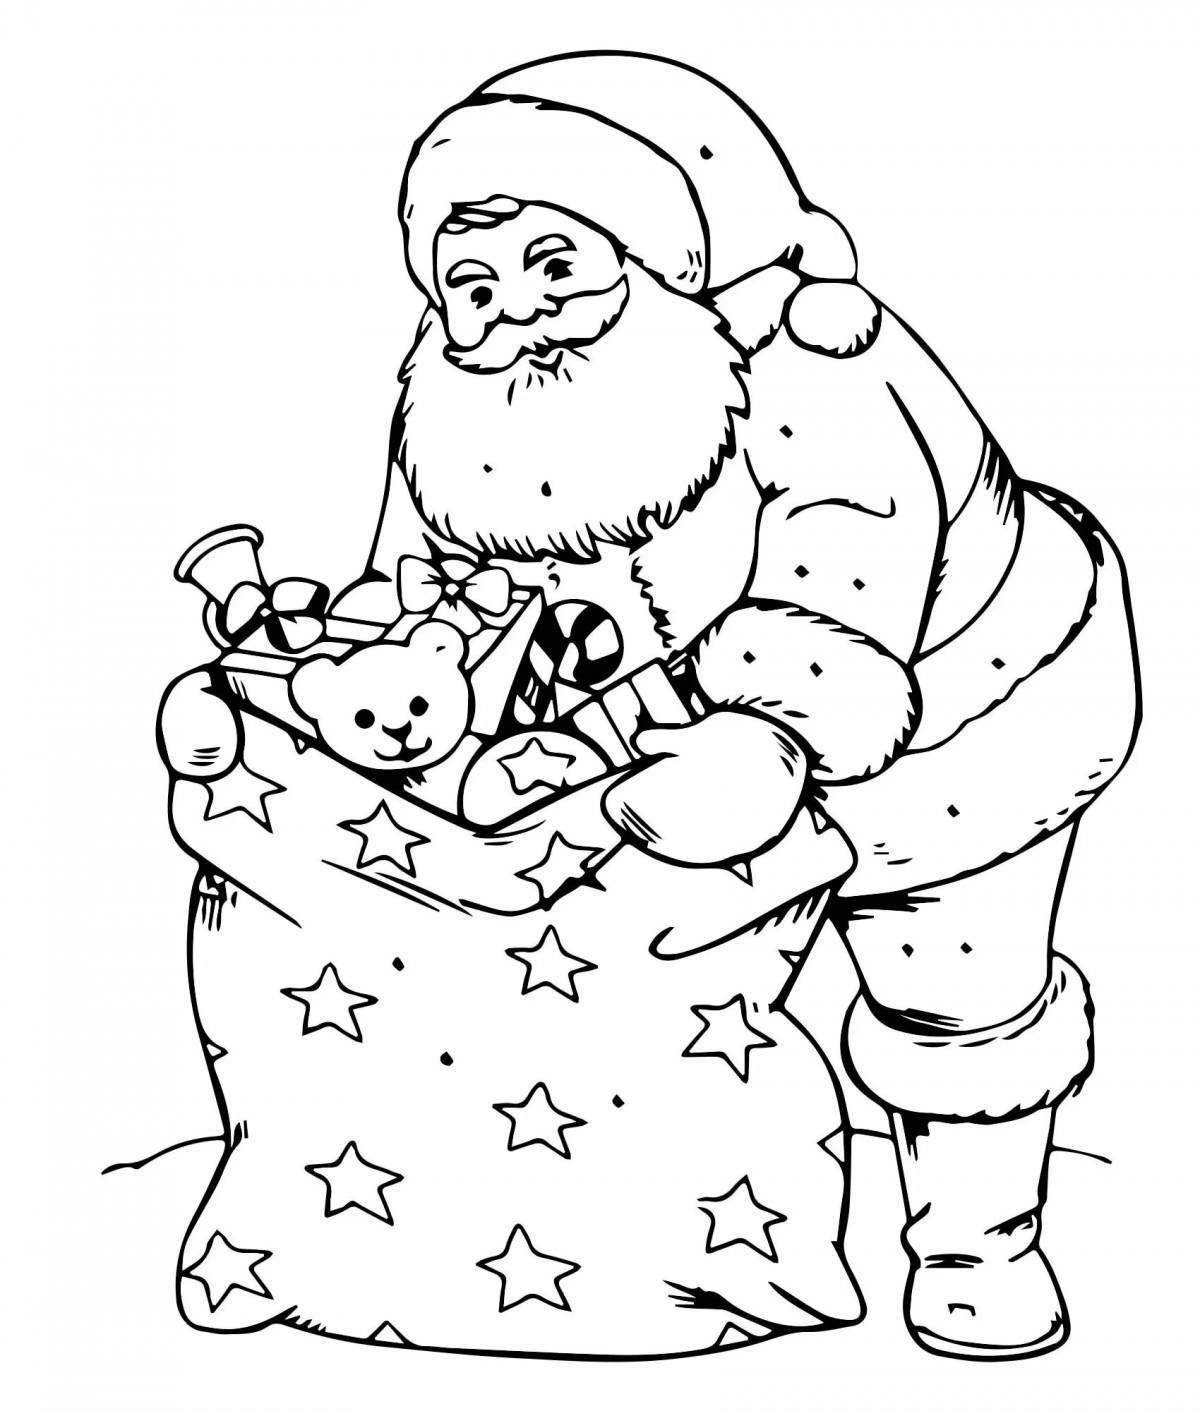 Cute santa claus coloring book for kids